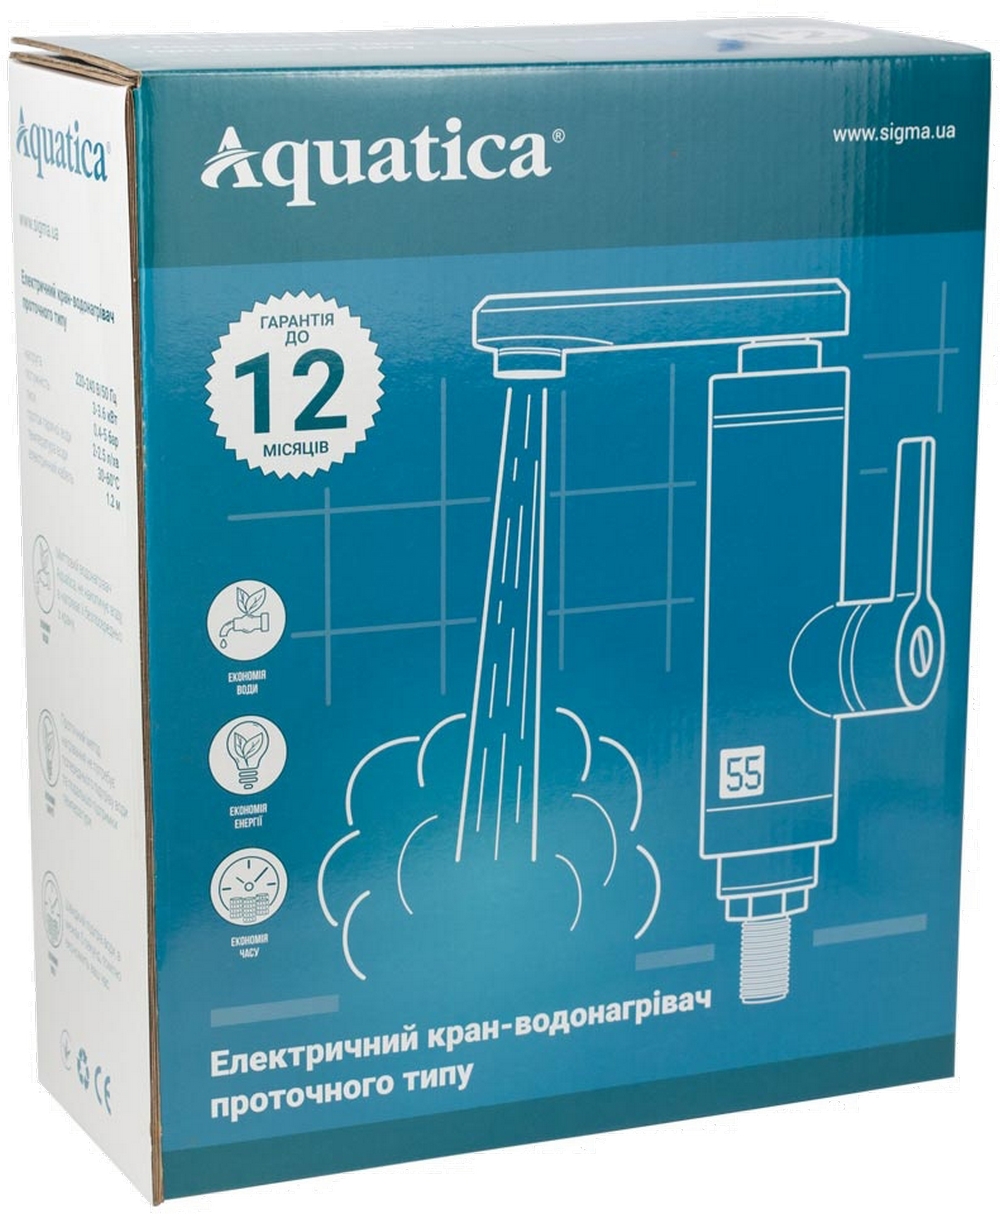 Проточный водонагреватель Aquatica LZ-6A211W цена 1131.00 грн - фотография 2